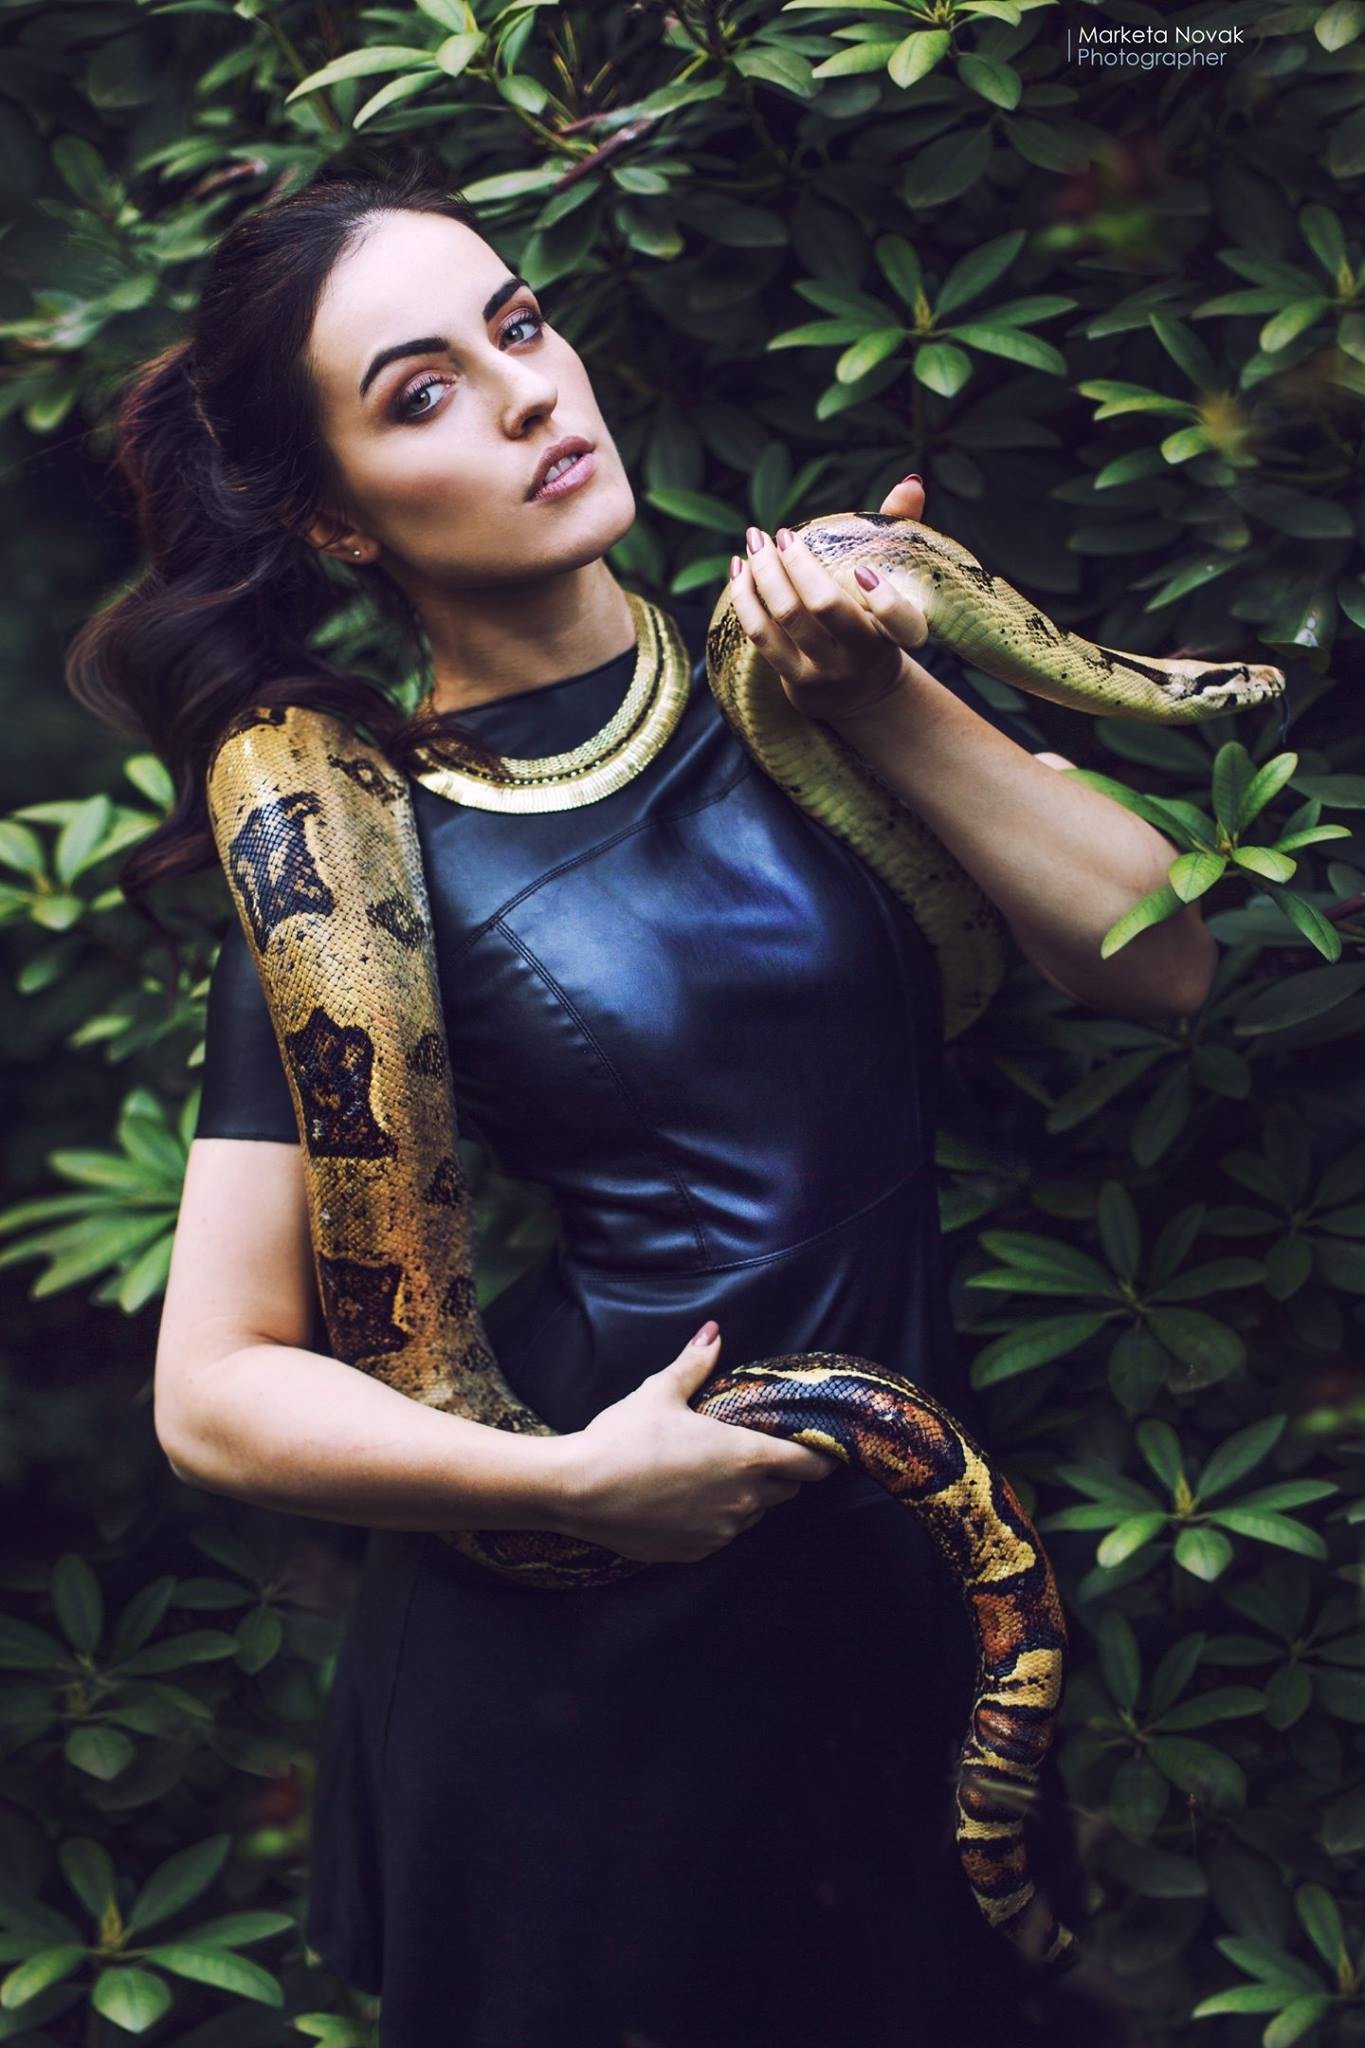 Женщины гадюки. Девушка змея. Фотосессия со змеями.